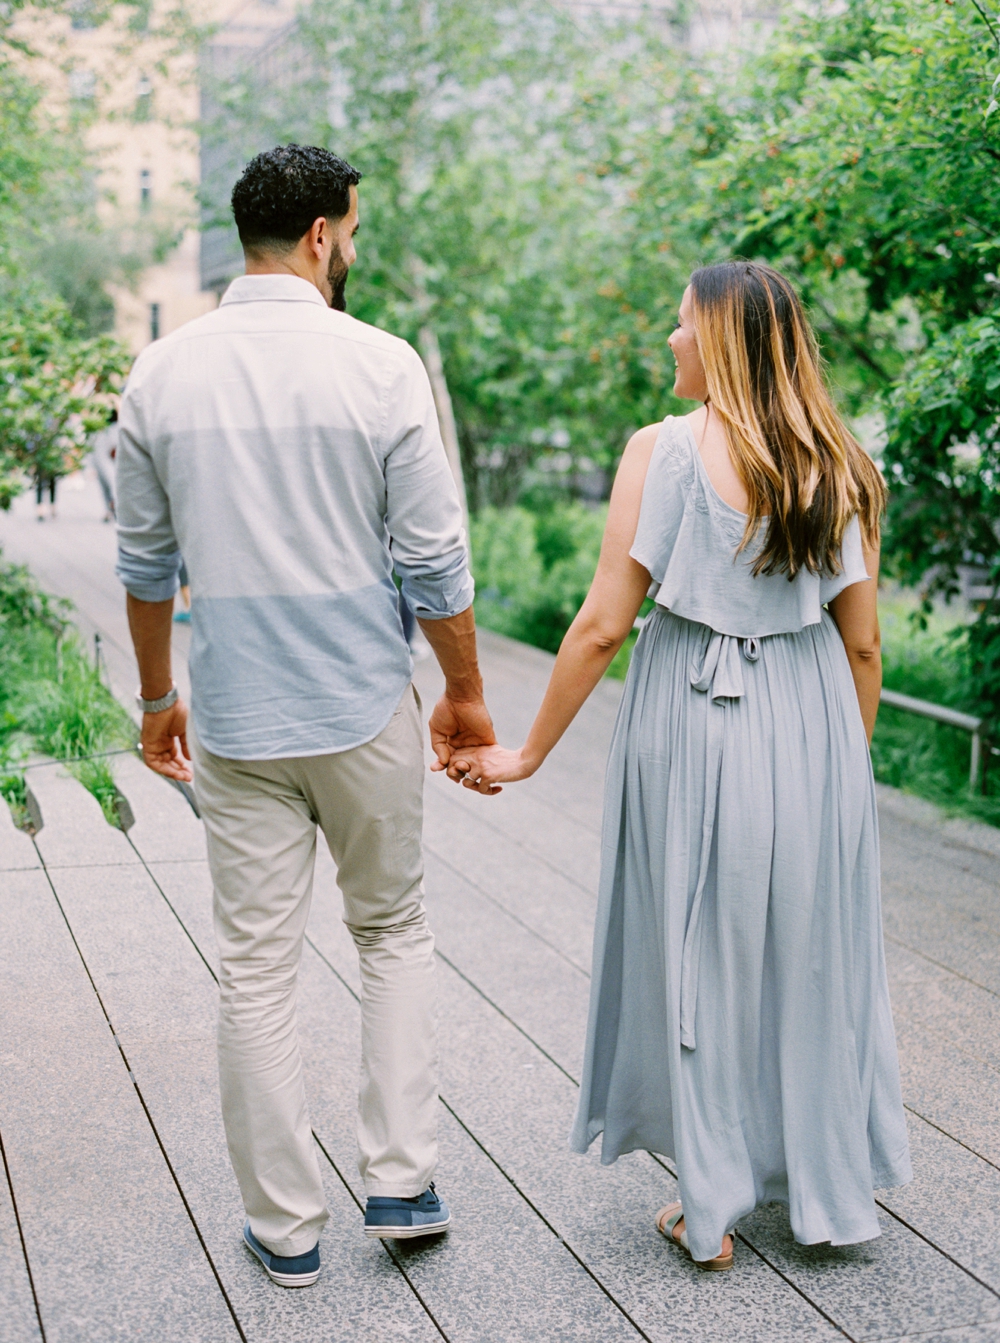 New York City High Line | Engagement Photography | Engagement Session | Amal & Muhamed | NYC Engagement Photos | Calgary Wedding Photographers